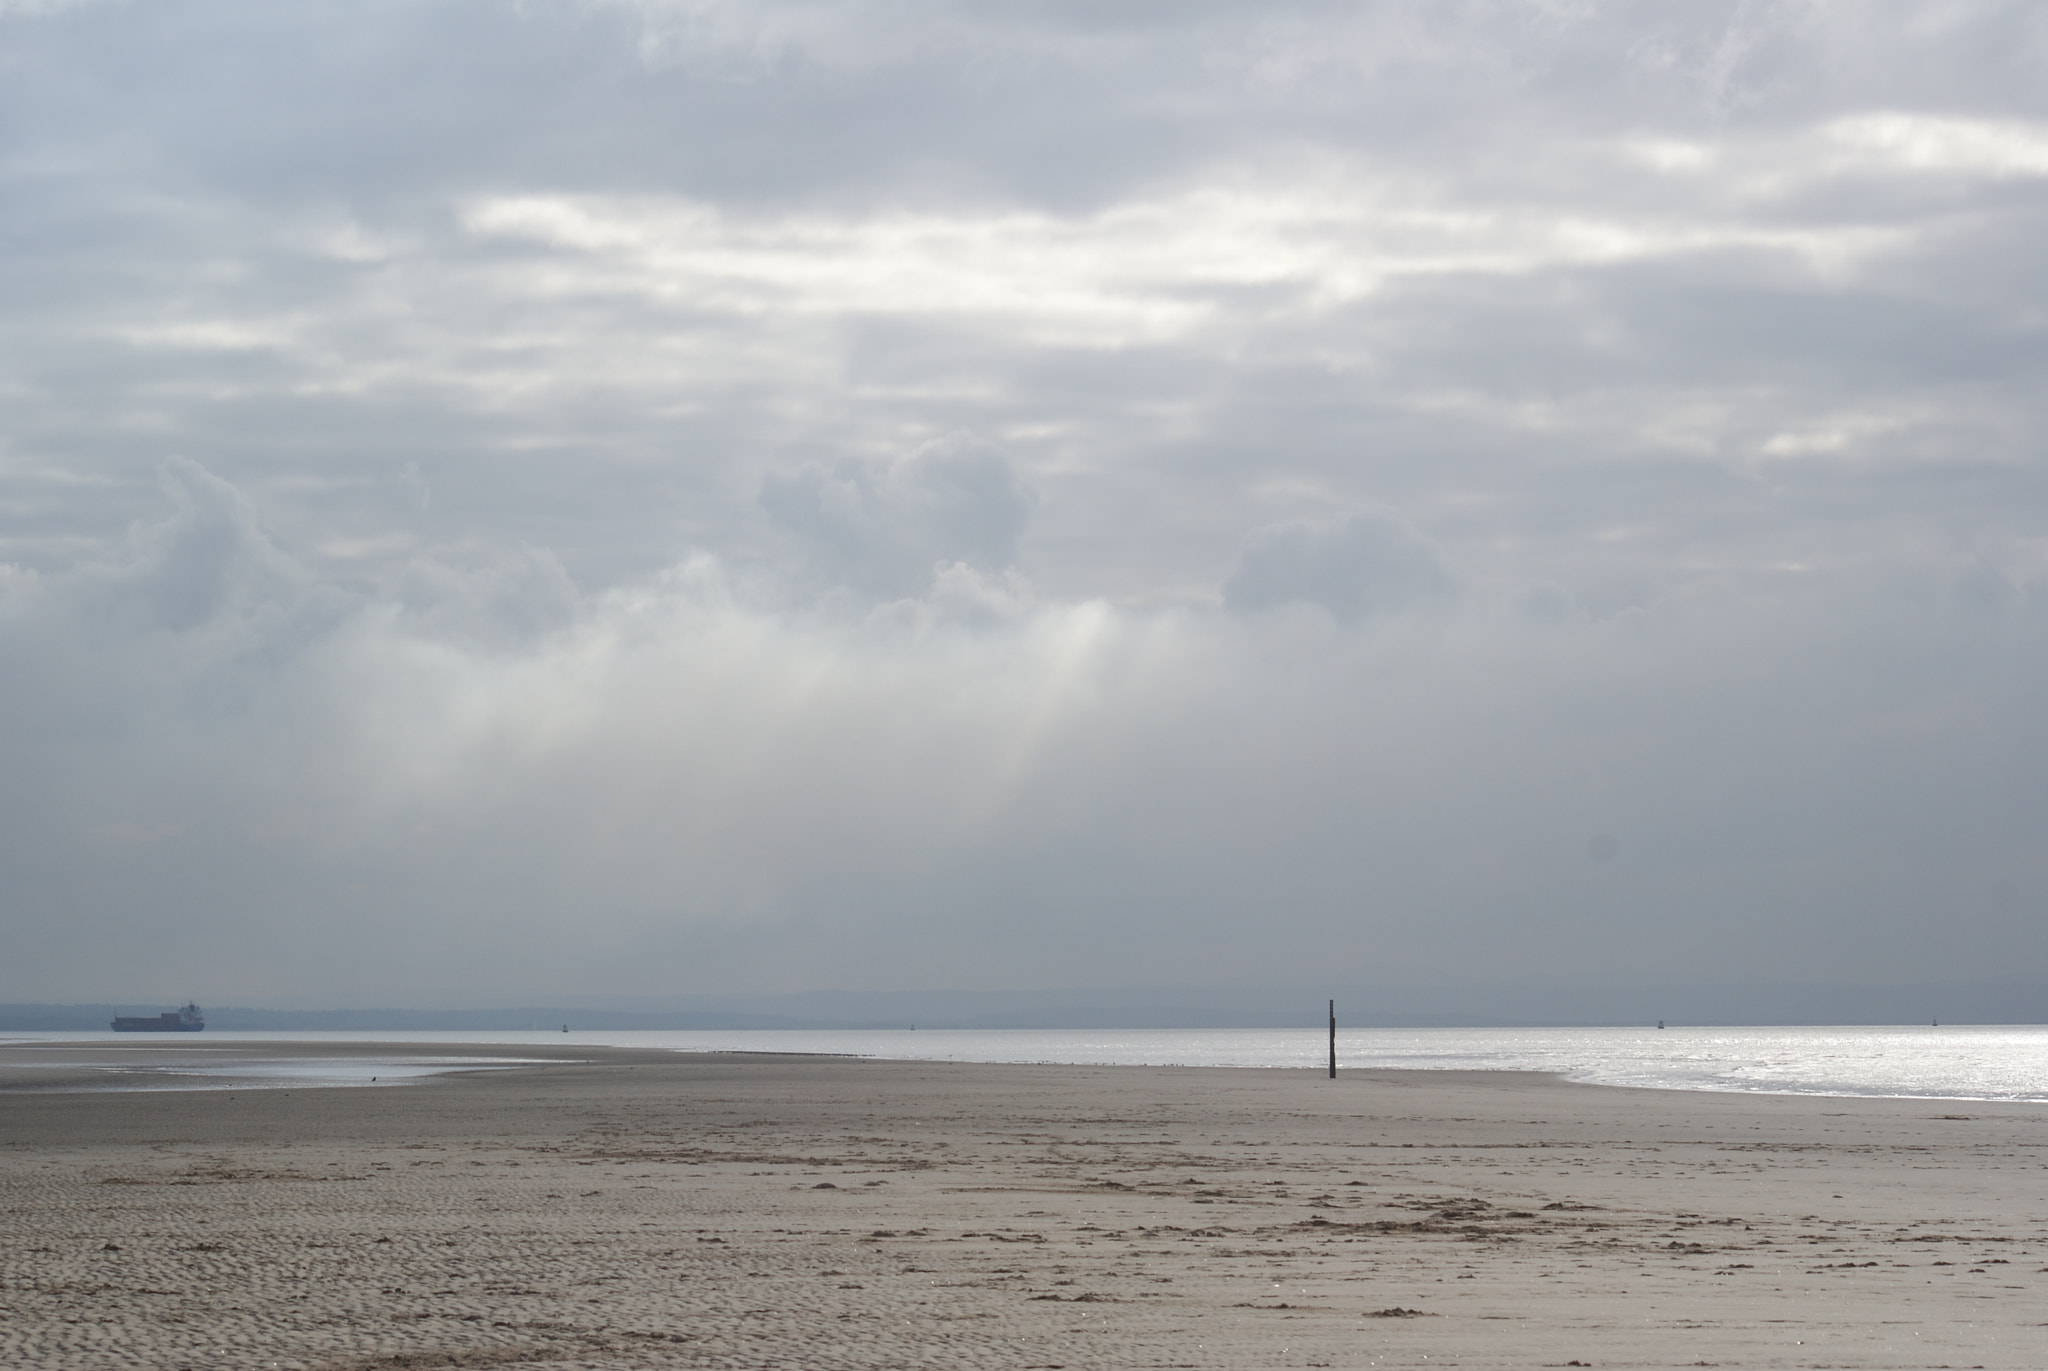 Sony Alpha DSLR-A200 sample photo. Formby beach merseyside photography